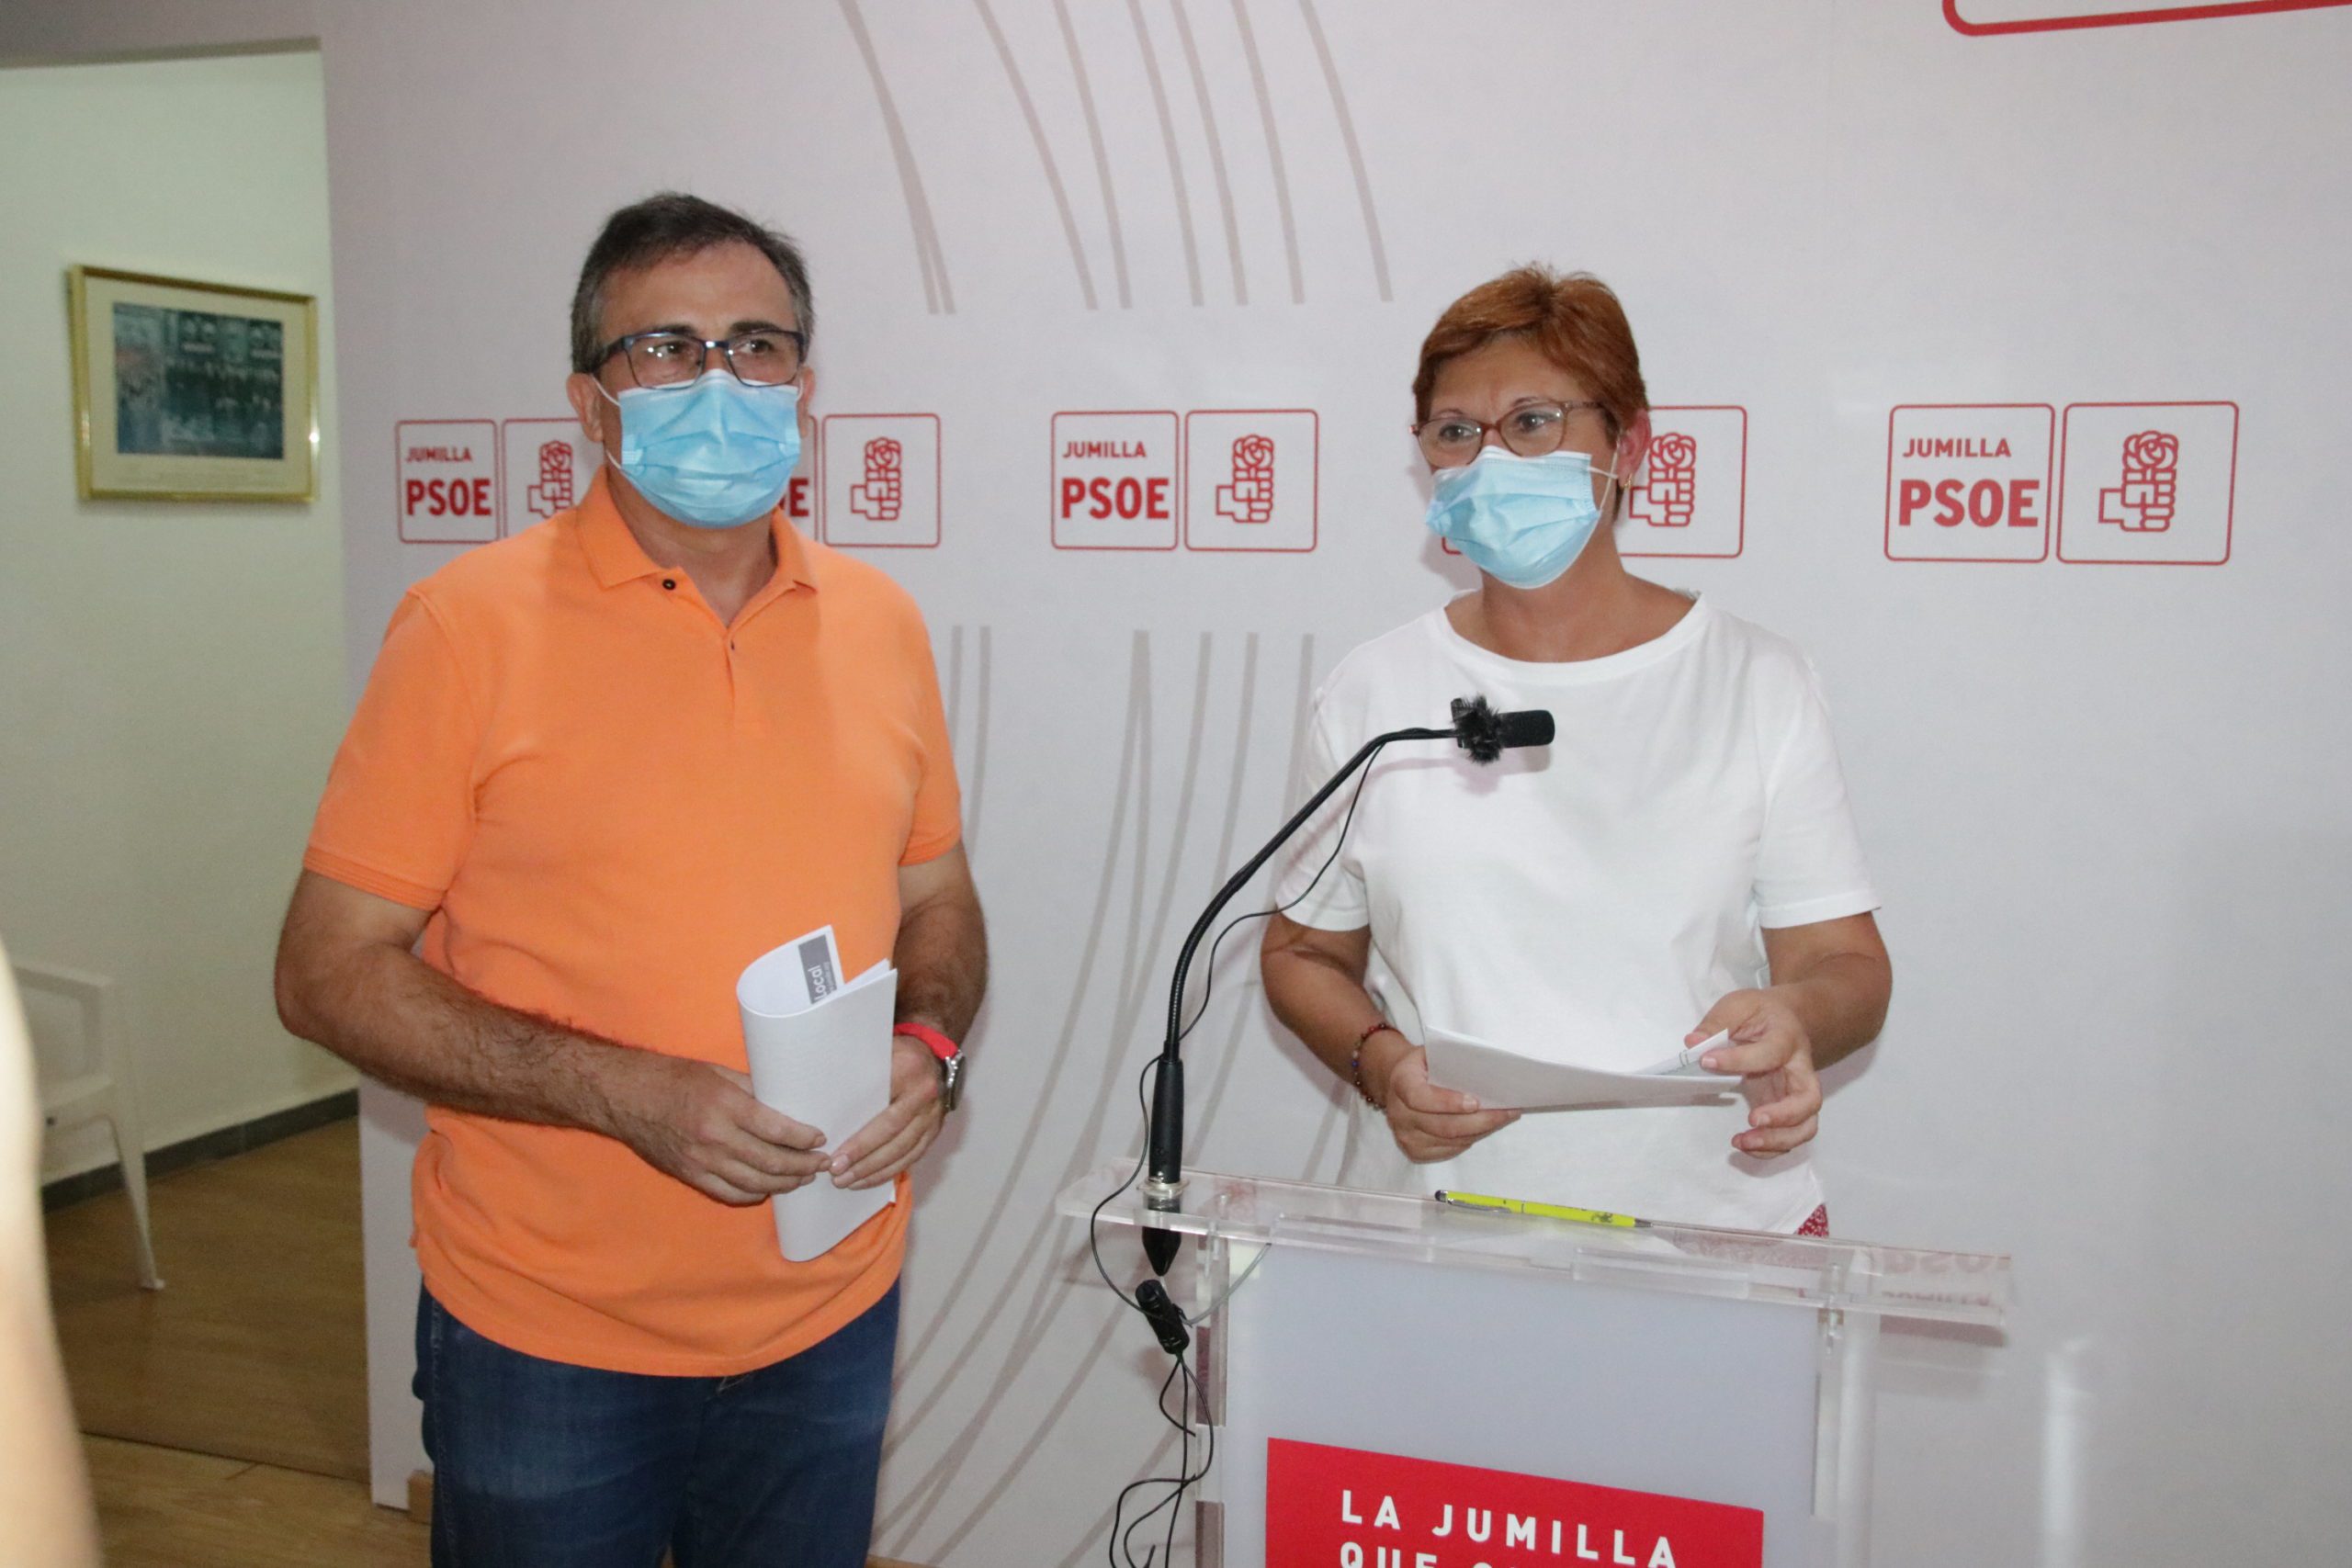 La secretaria general del PSOE y alcaldesa: “El Partido Popular está en permanente campaña electoral”